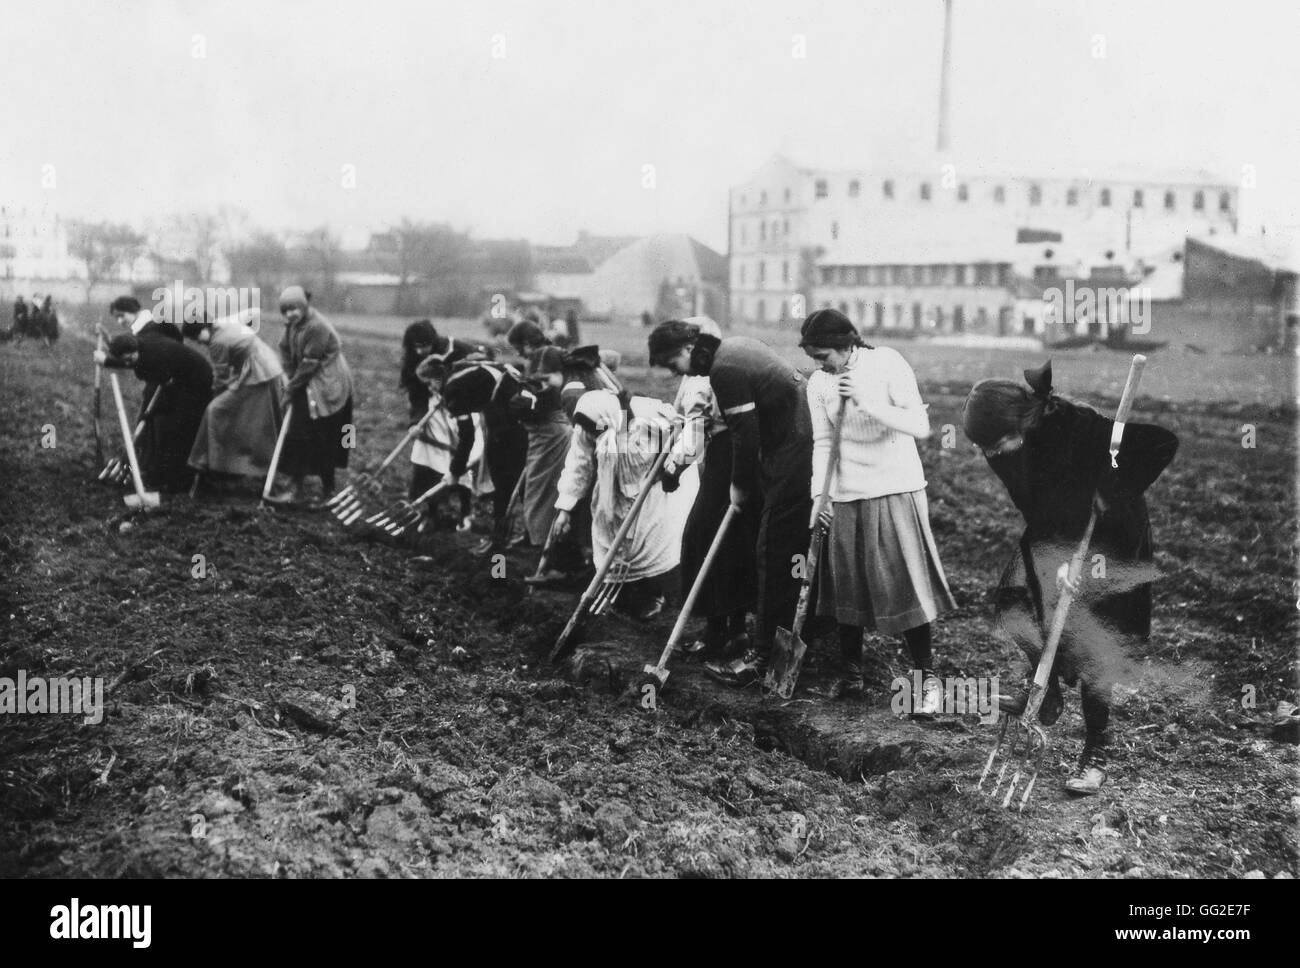 Les femmes travaillant dans les champs pendant la première guerre mondiale 1917 France, la Première Guerre mondiale Banque D'Images